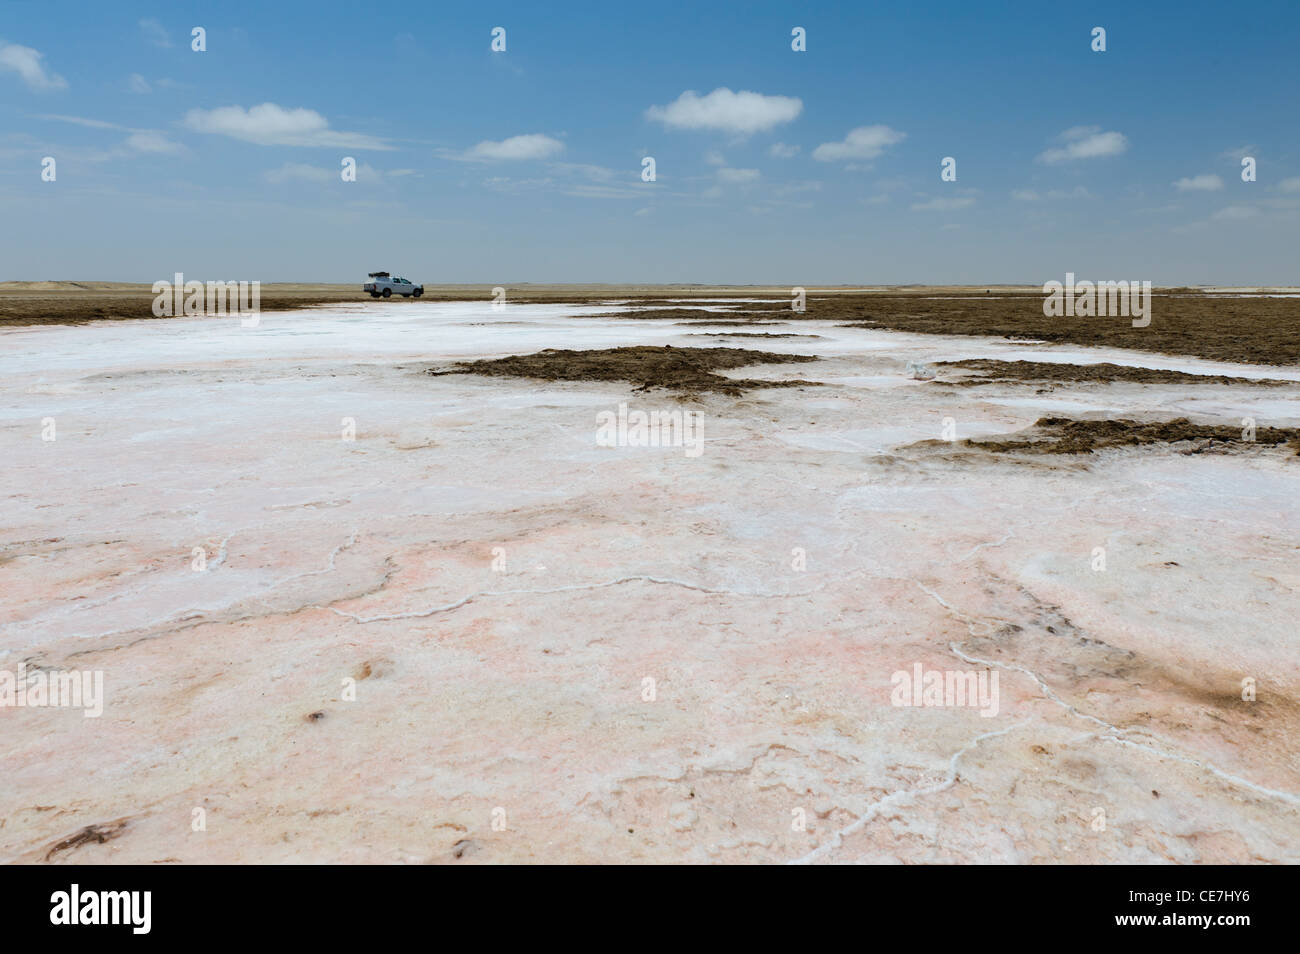 4 x 4 Fahrzeug auf der Felge eine Salzpfanne entlang der Skelettküste, Namibia. Stockfoto